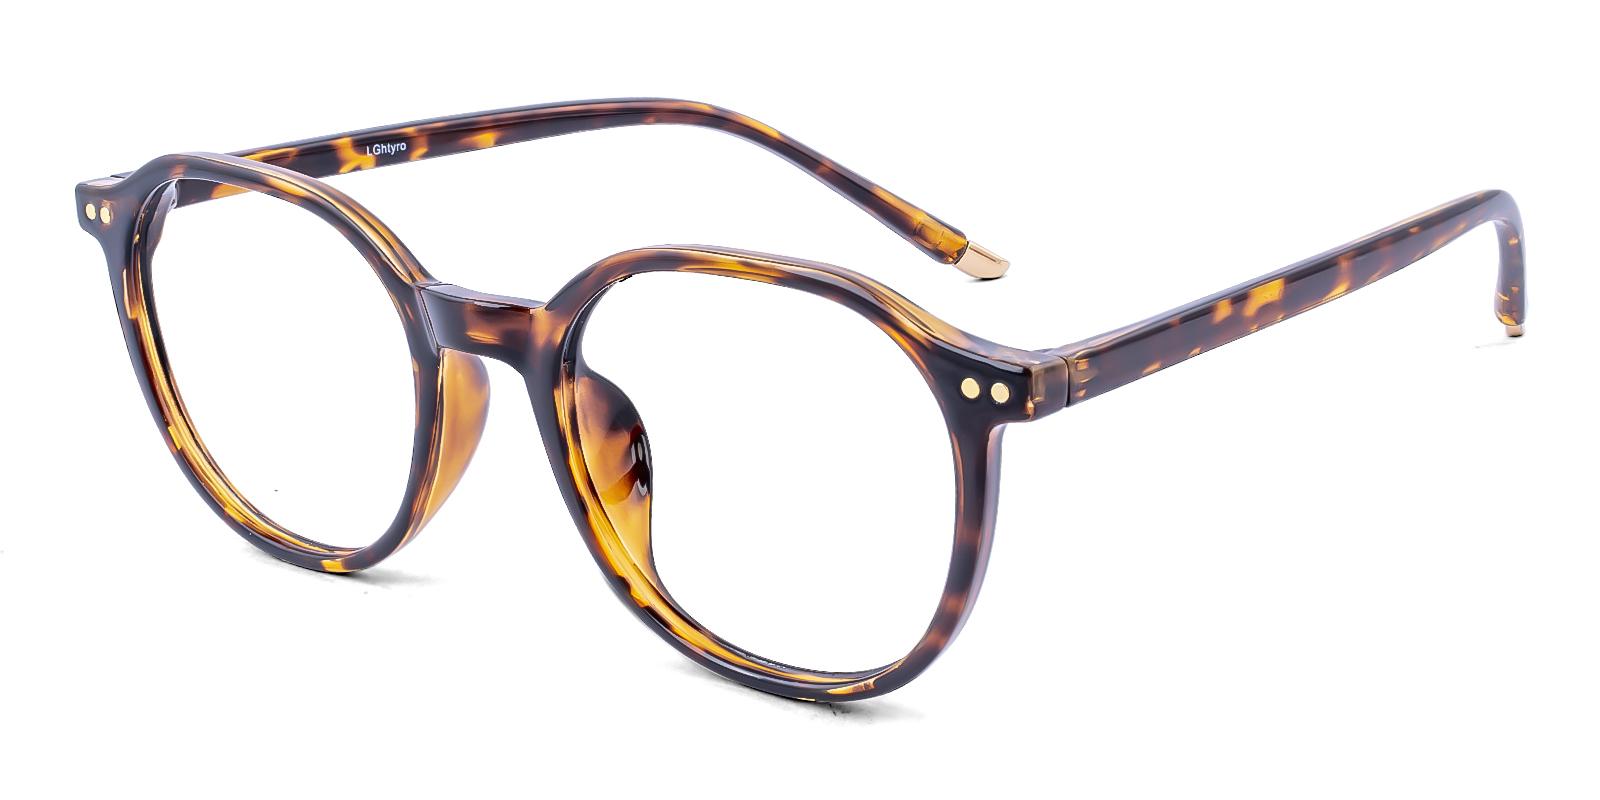 Restlike Tortoise Plastic Eyeglasses , UniversalBridgeFit Frames from ABBE Glasses